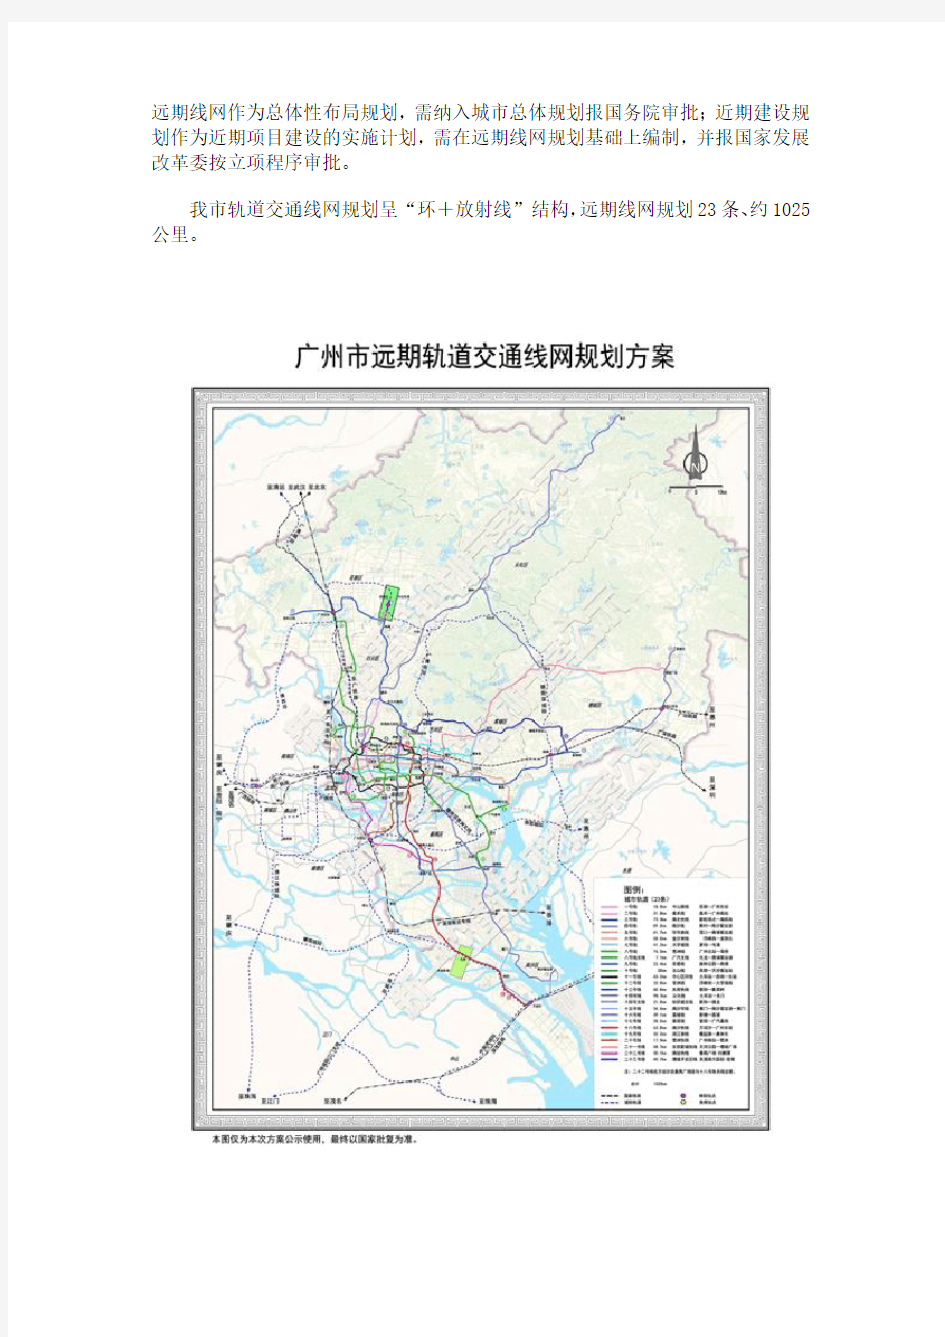 20160107广州市新一轮城市轨道交通建设规划方案